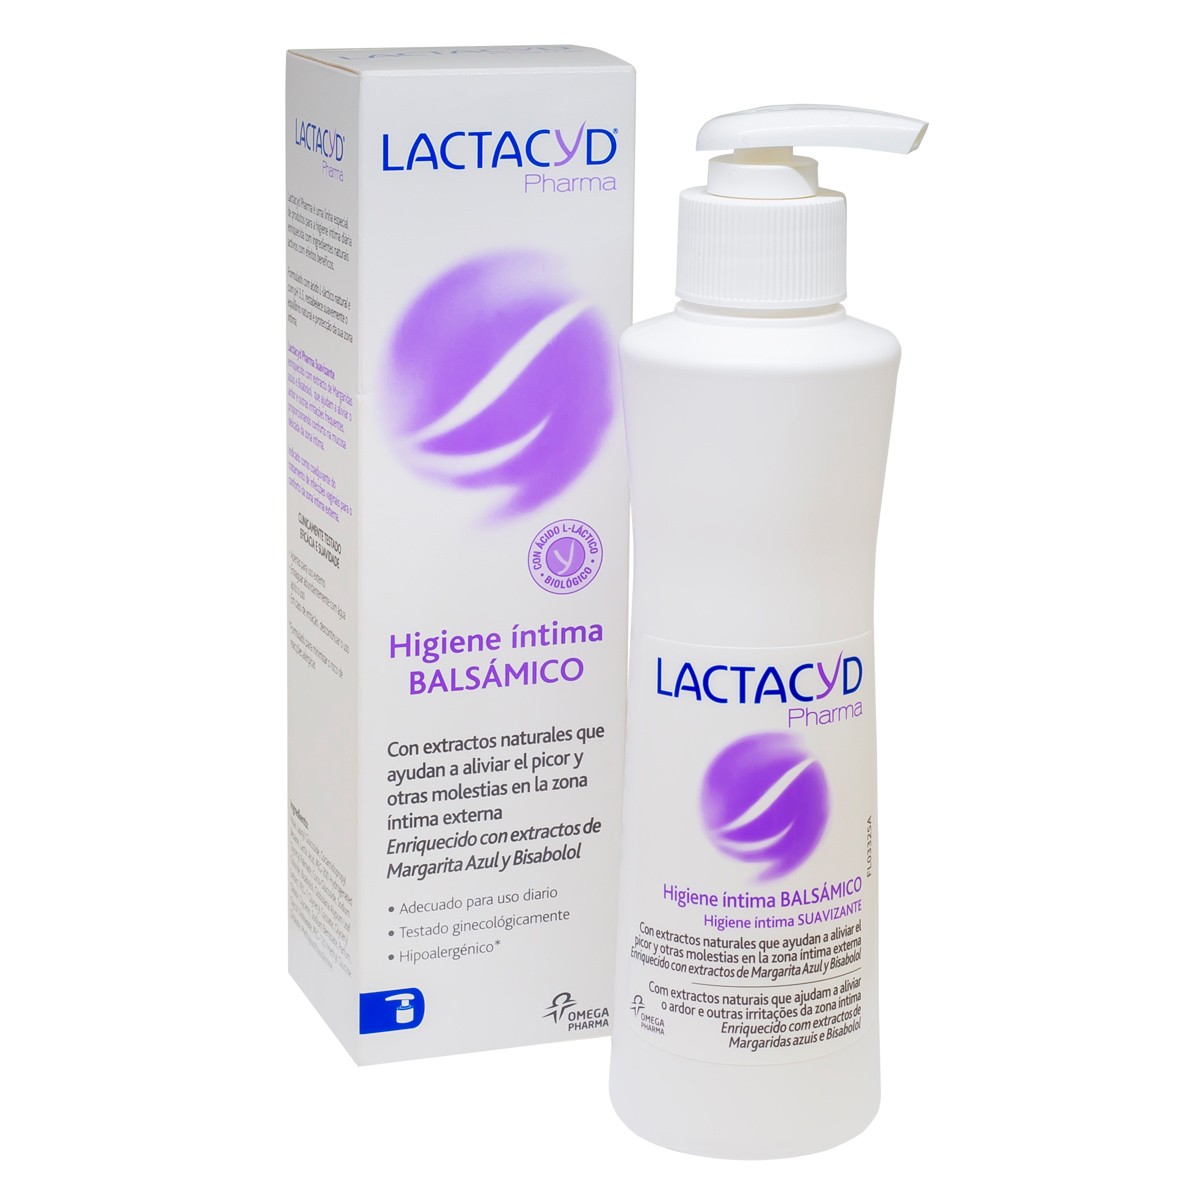 Imagen de Lactacyd pharma balsamico 250 ml